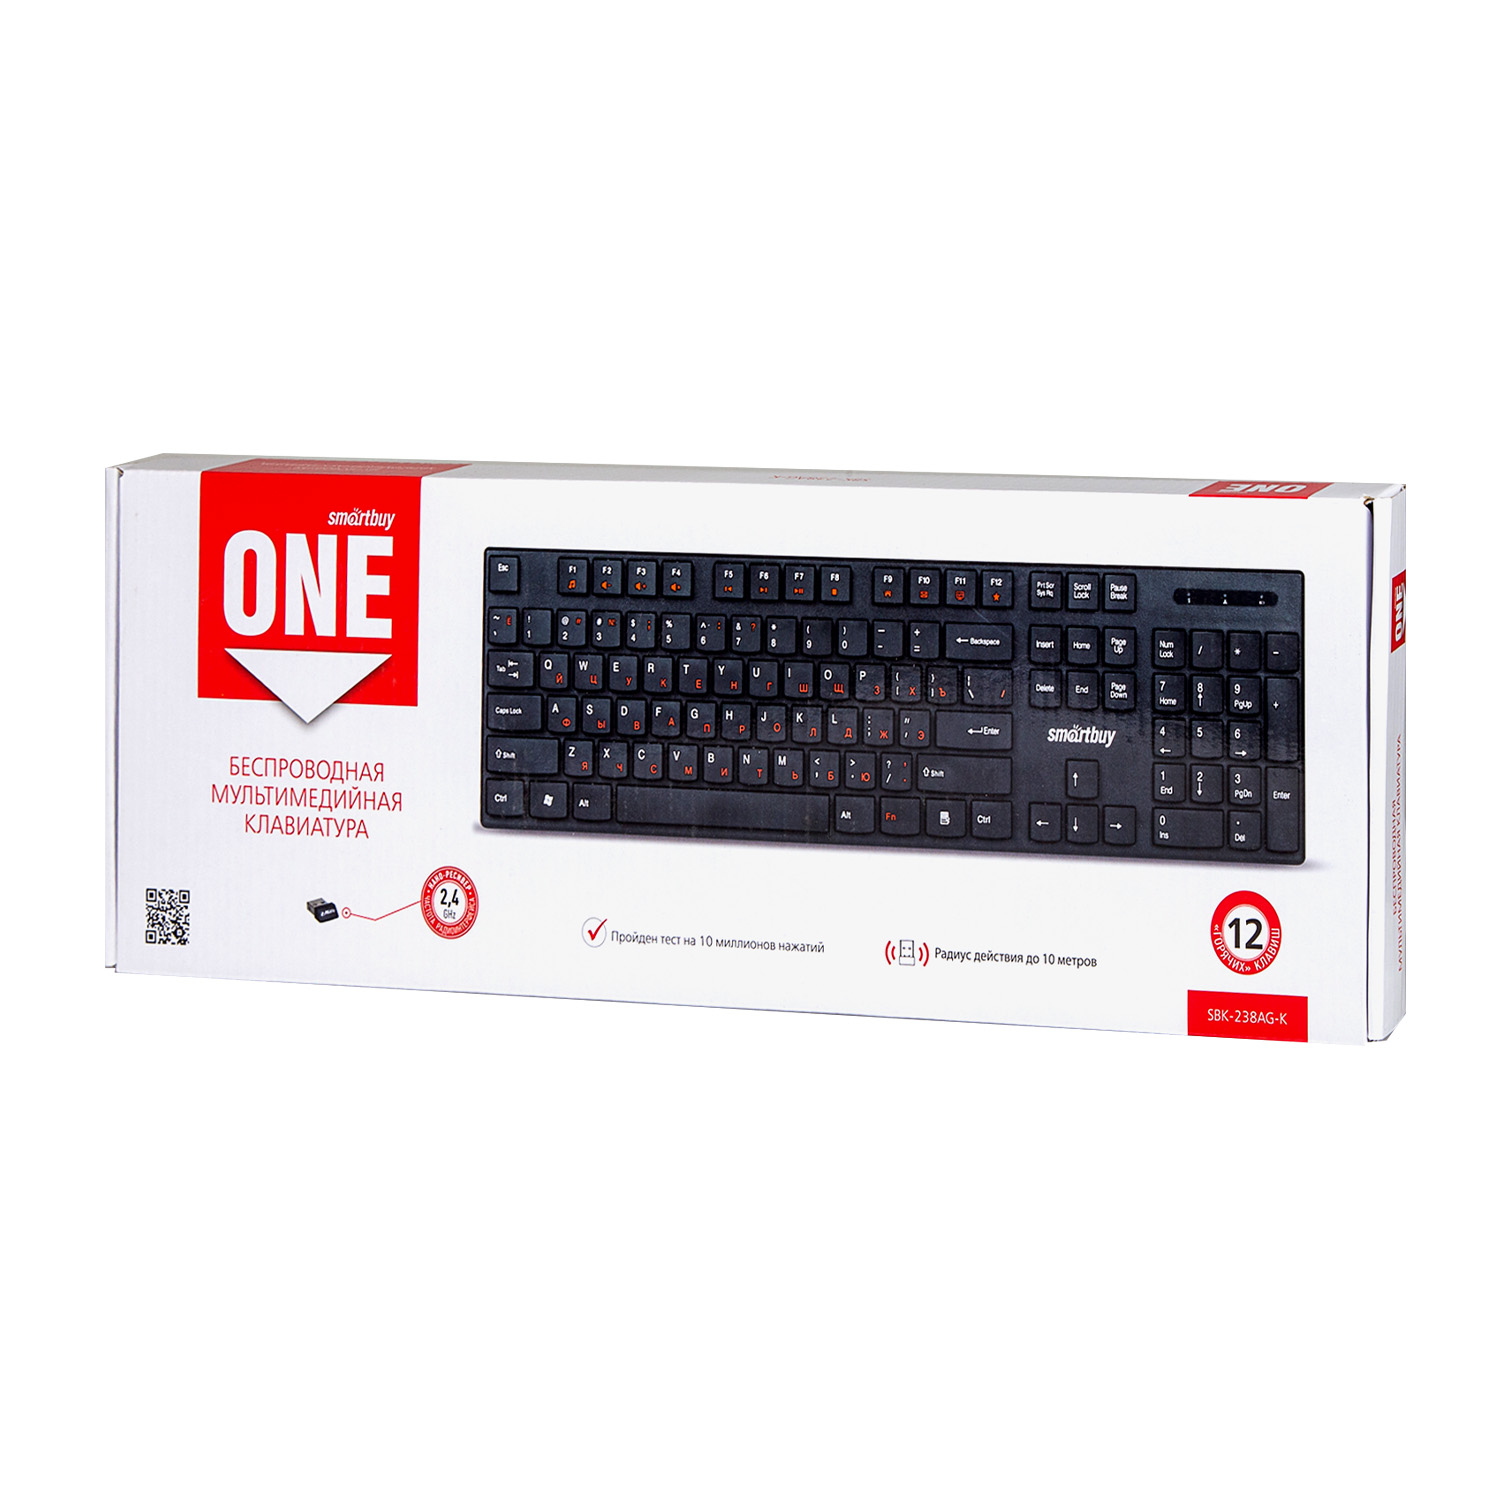 Клавиатура беспроводная мультимедийная Smartbuy ONE 238 USB черная (SBK-238AG-K)/20